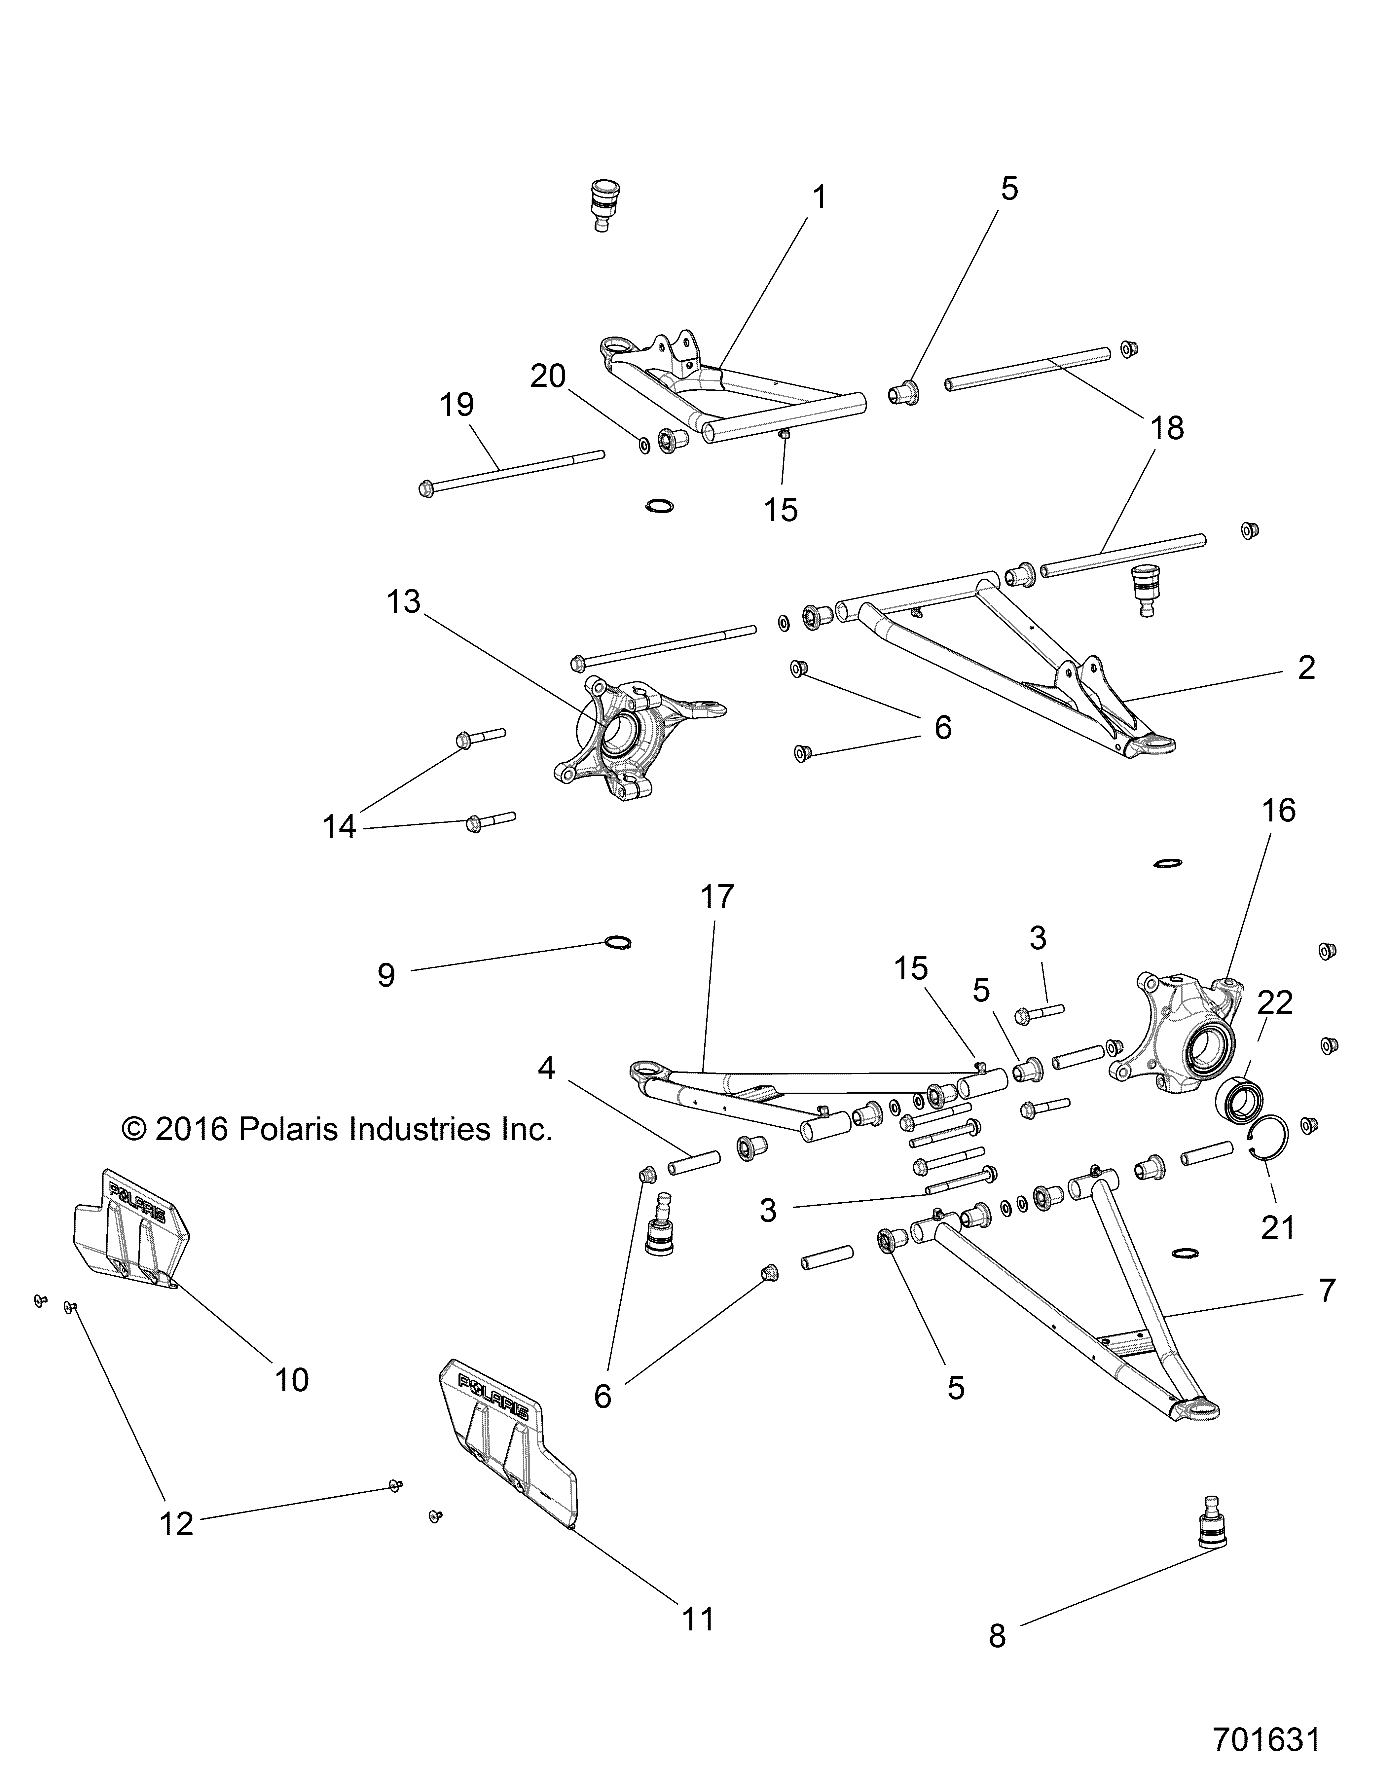 Foto diagrama Polaris que contem a peça 1019669-689